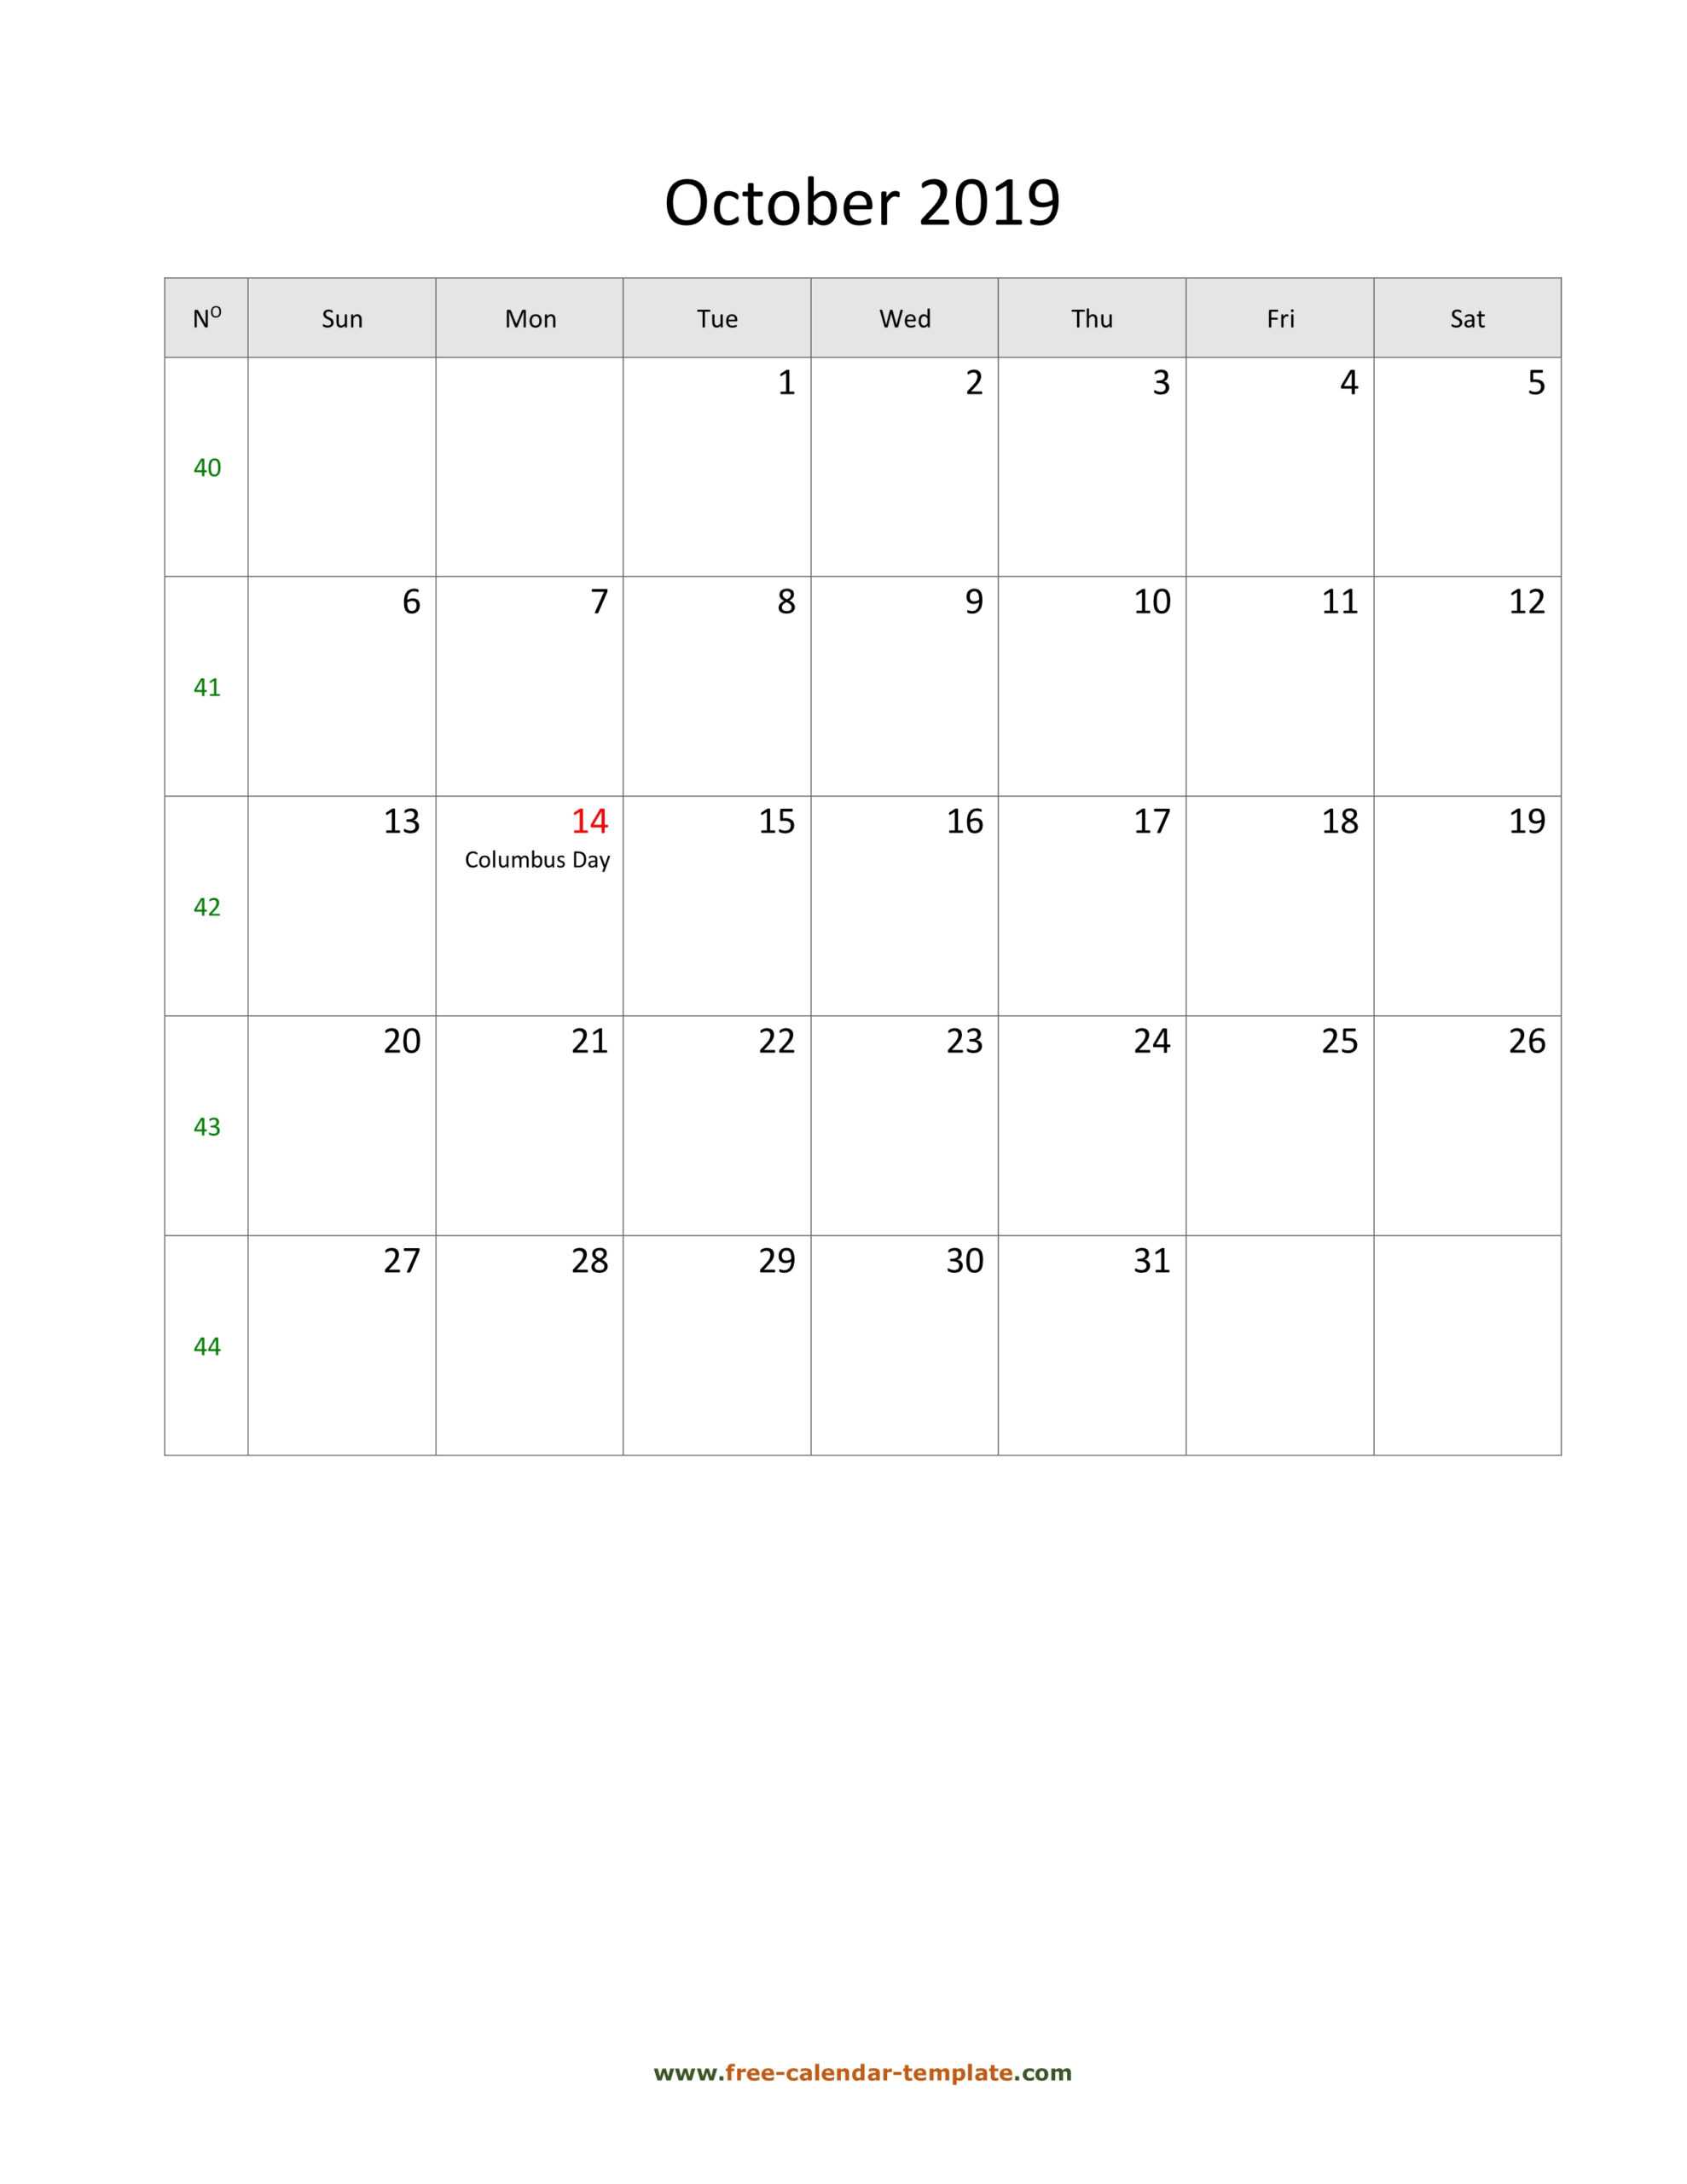 October 2019 Free Calendar Tempplate | Free Calendar Throughout Blank Activity Calendar Template